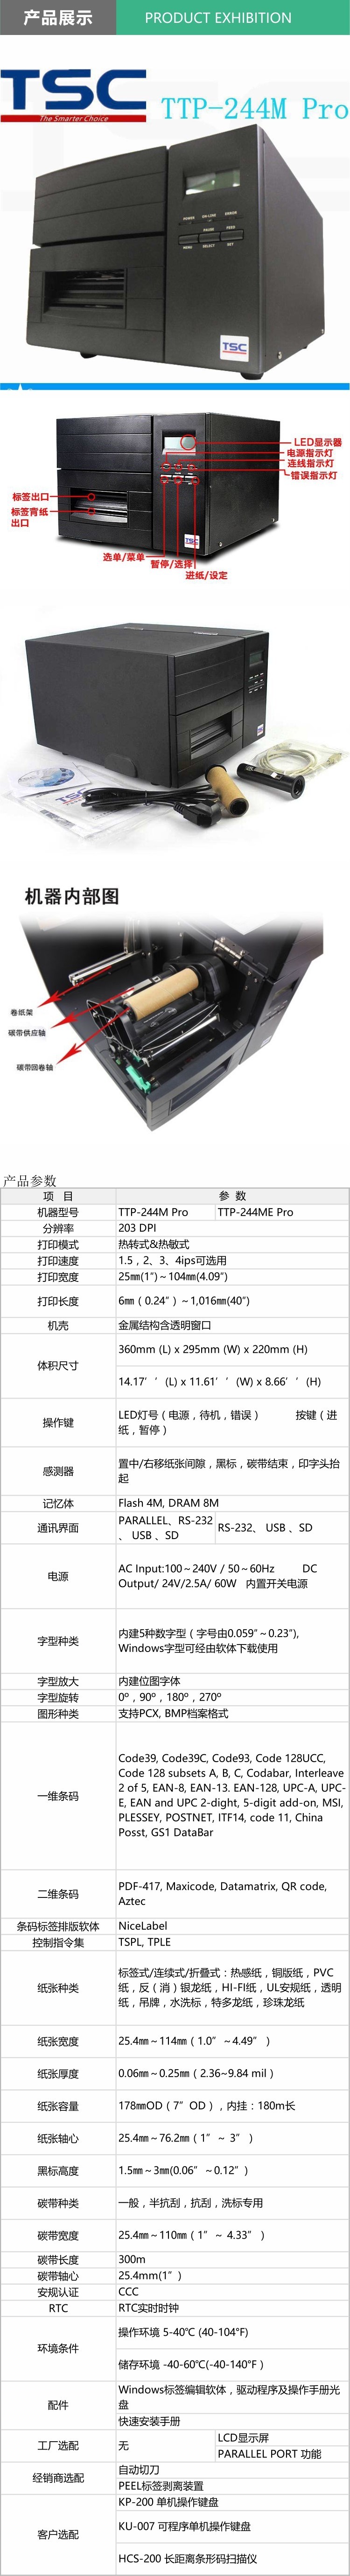 TTP-244M Pro+.jpg